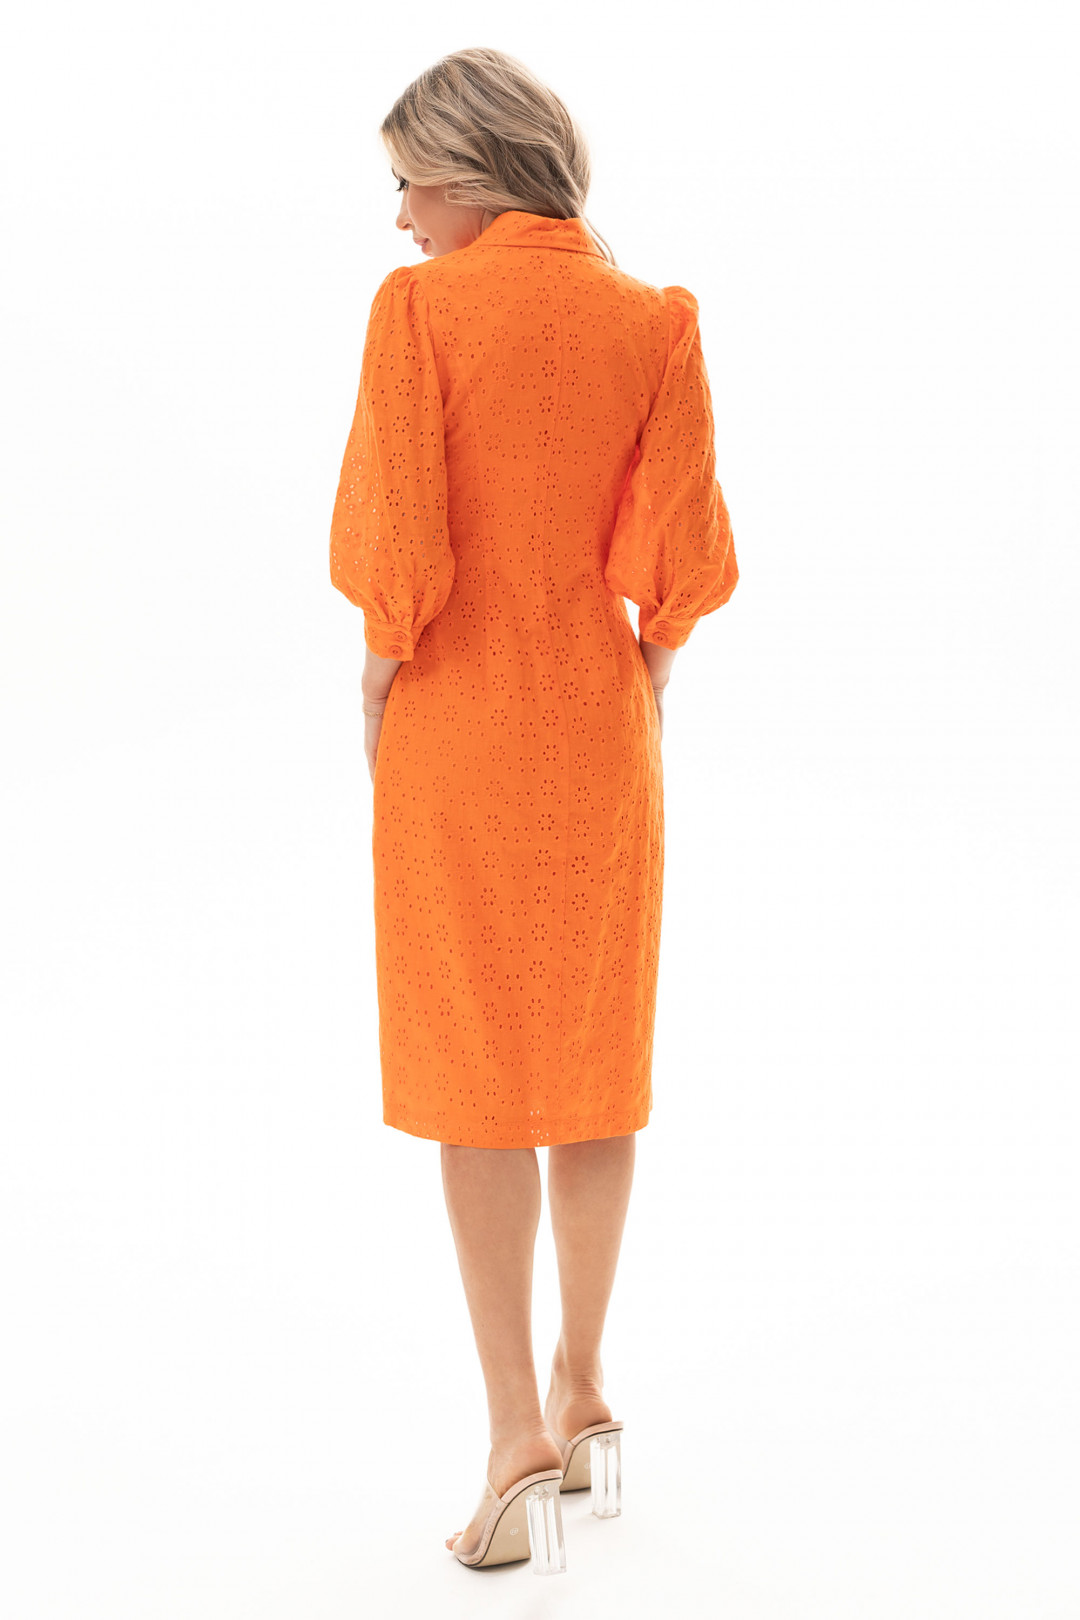 Платье Golden Valley 4910 оранжевый